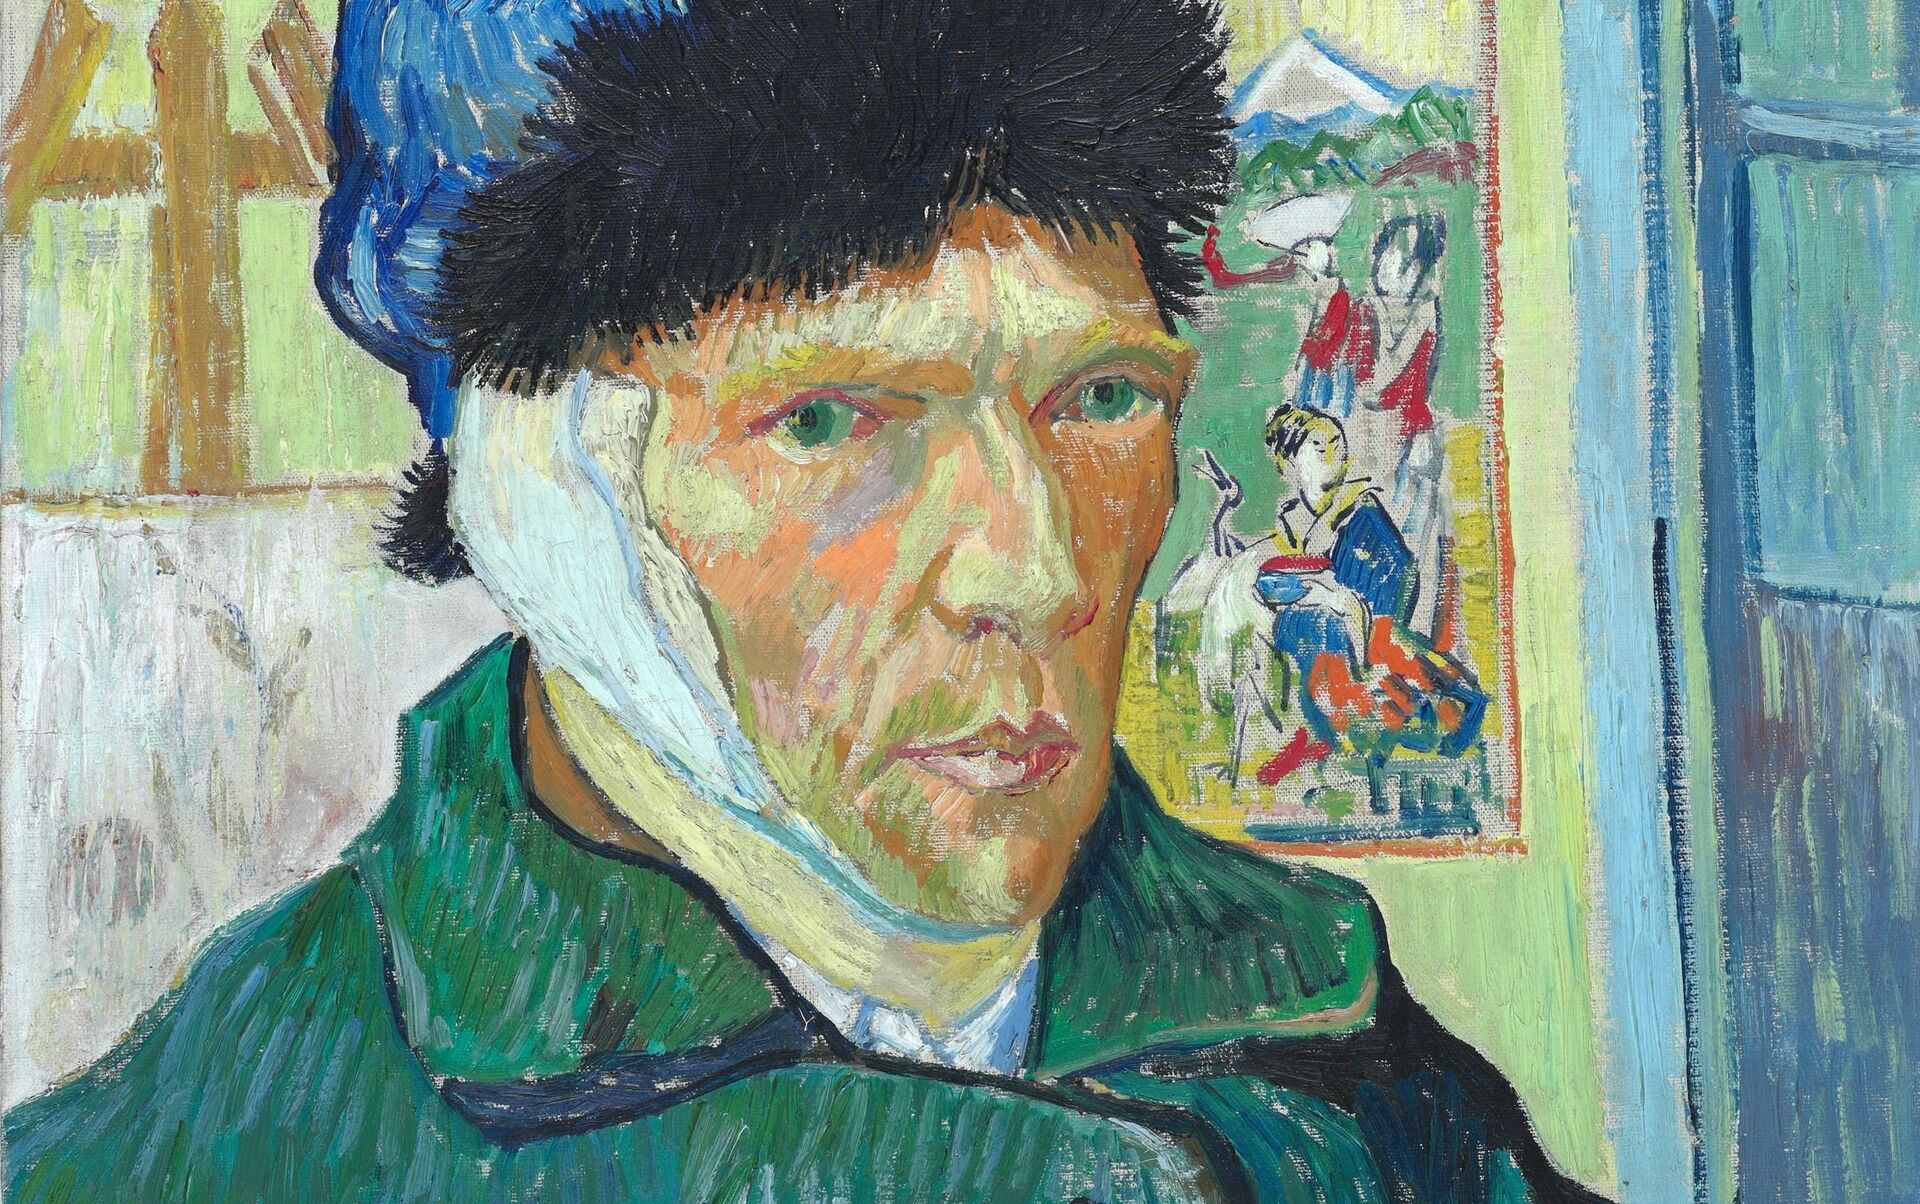 La verdadera historia de la oreja de Van Gogh y otras curiosidades